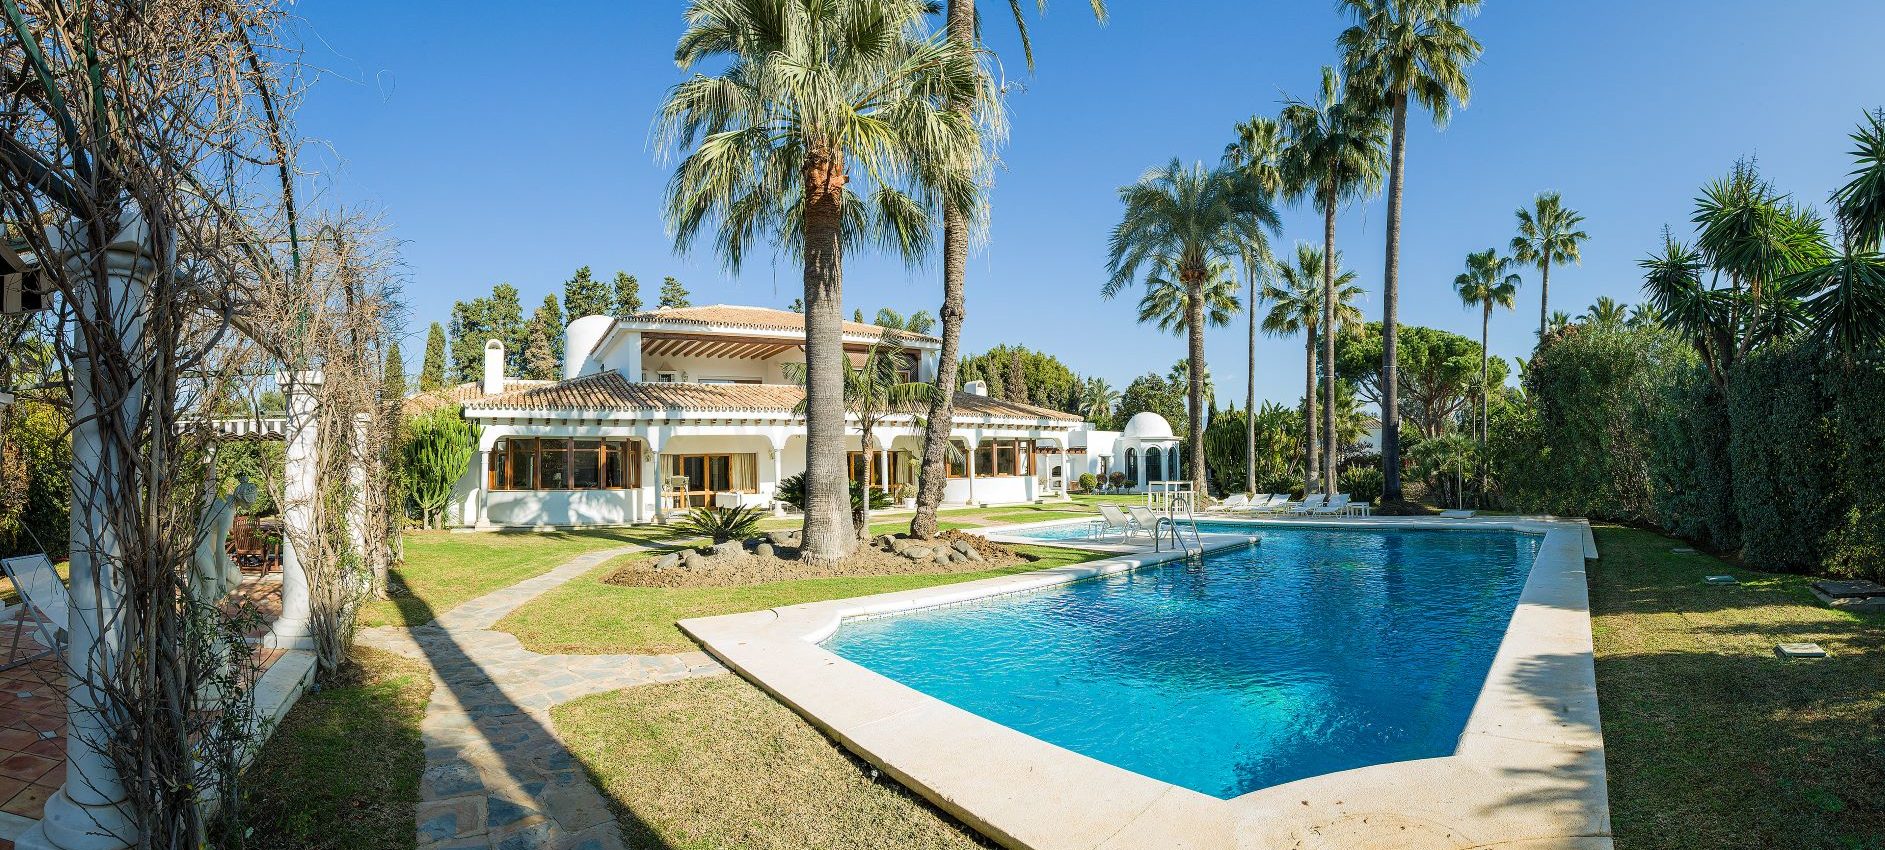 Great villa near the beach